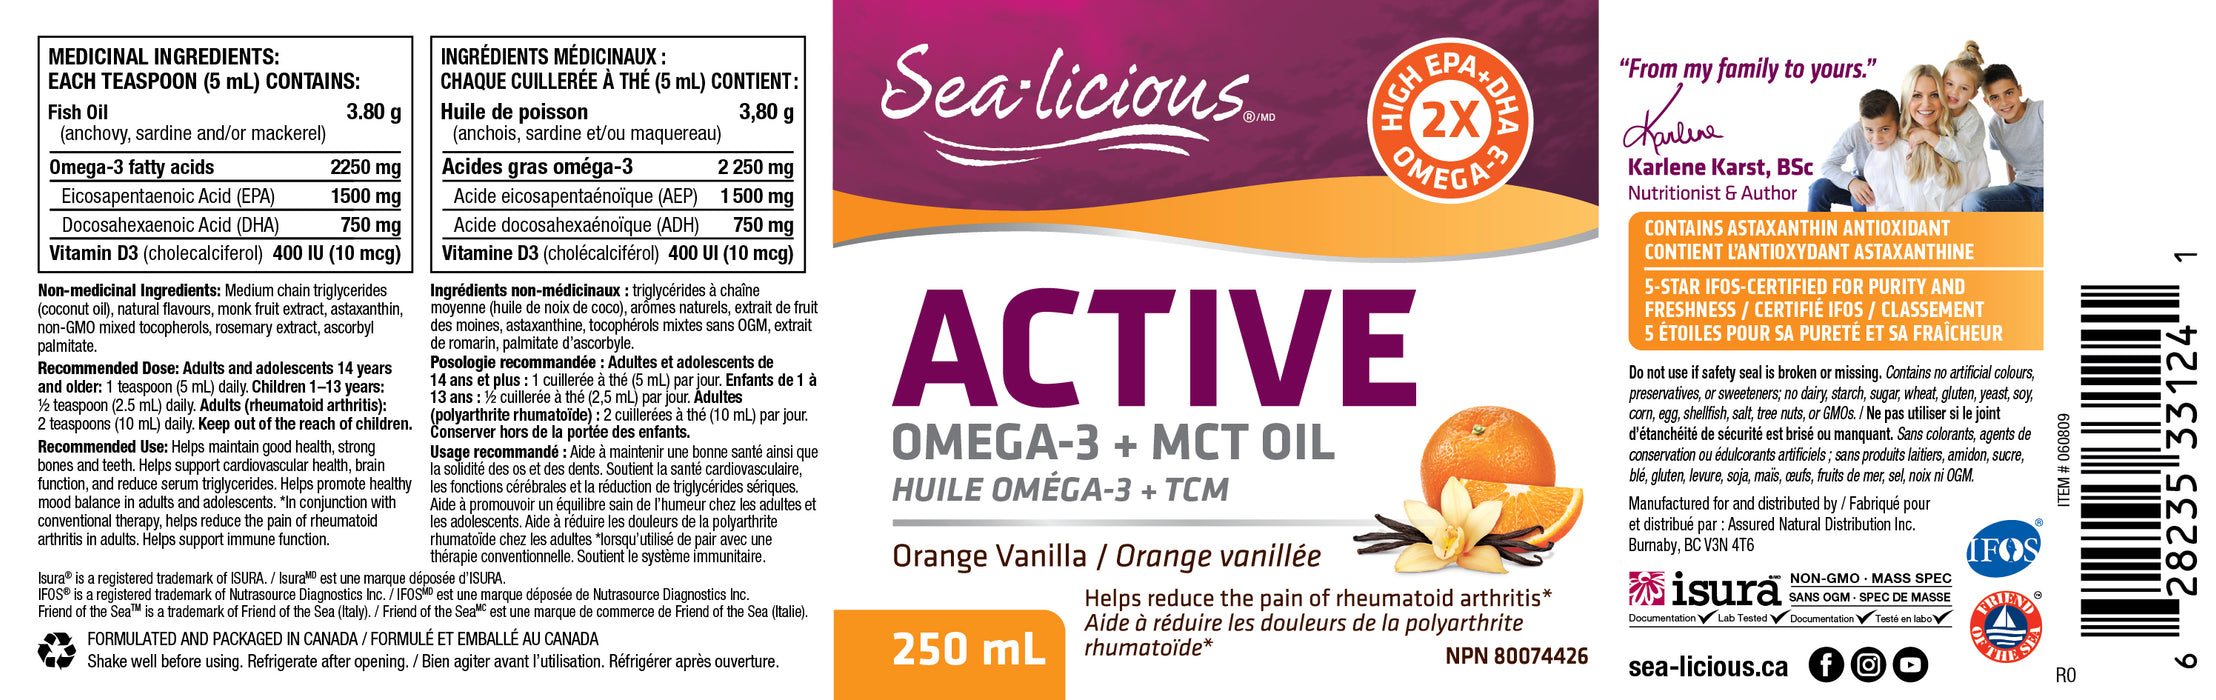 Sea-licious Active Omega-3 + MCT Oil 250mL